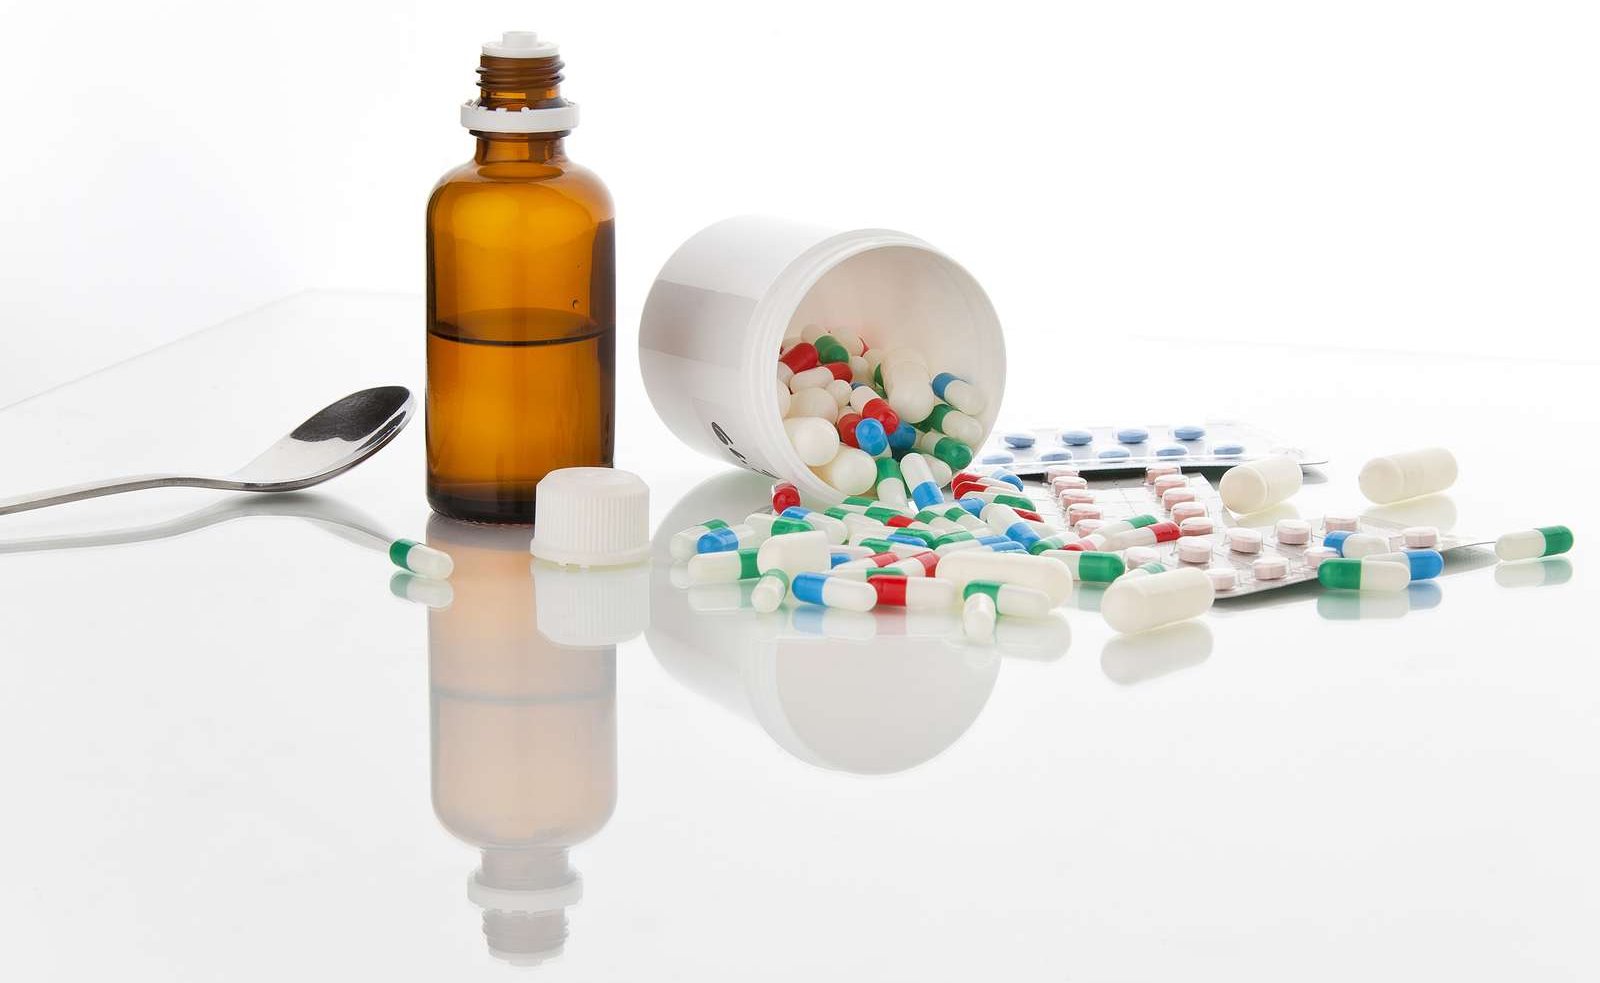 Ein Medikamentendöschen mit bunten Tabletten und ein Medizinfläschen, neben dem ein Löffel liegt.